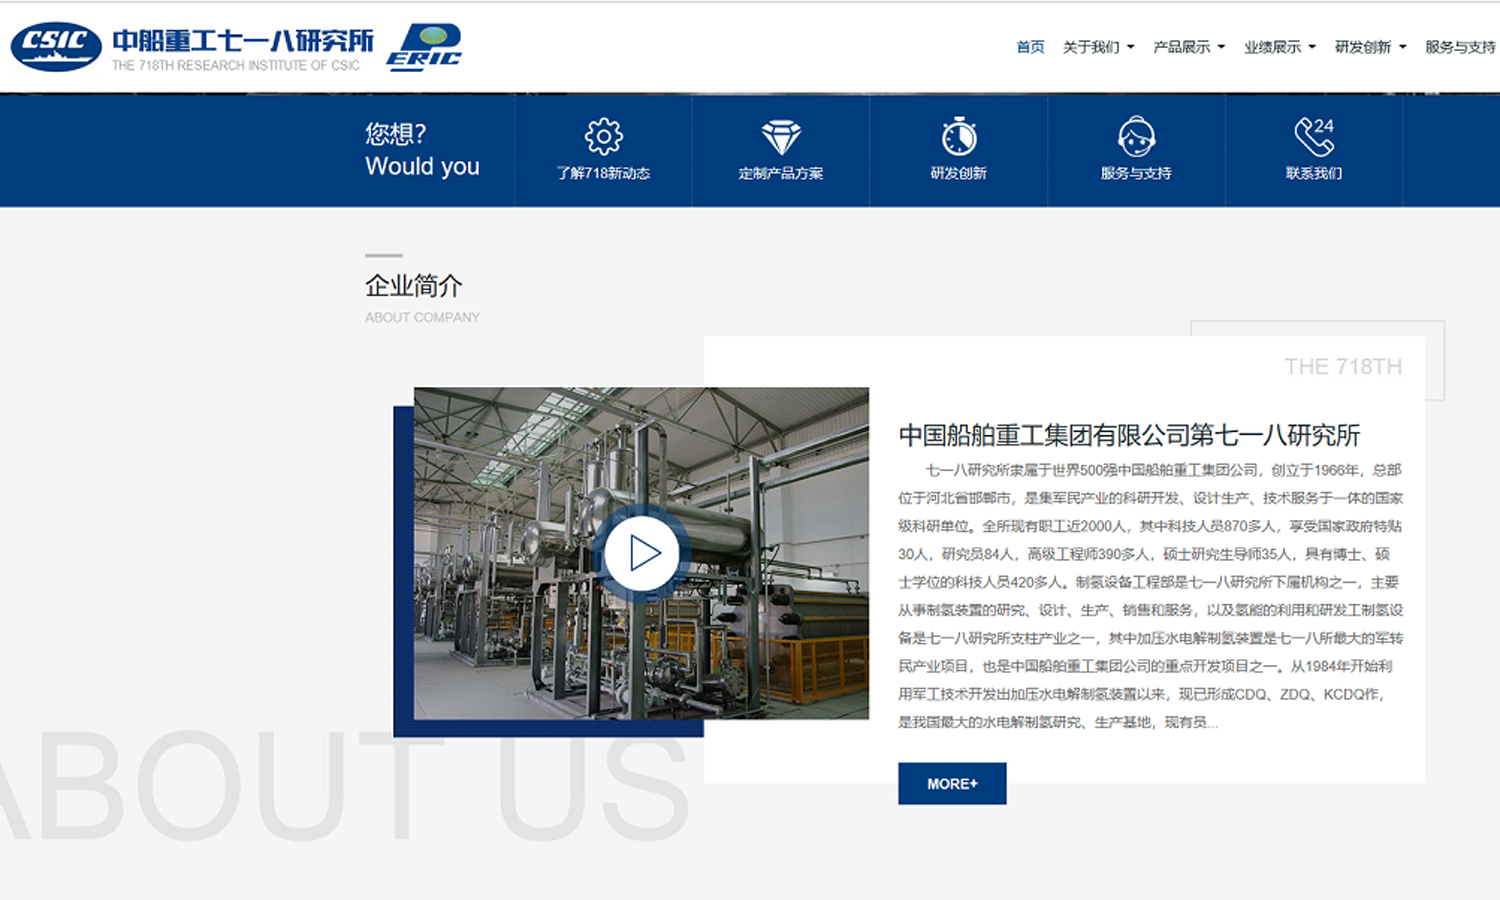 中国船舶重工集团有限公司第七一八研究所网站新版上线！